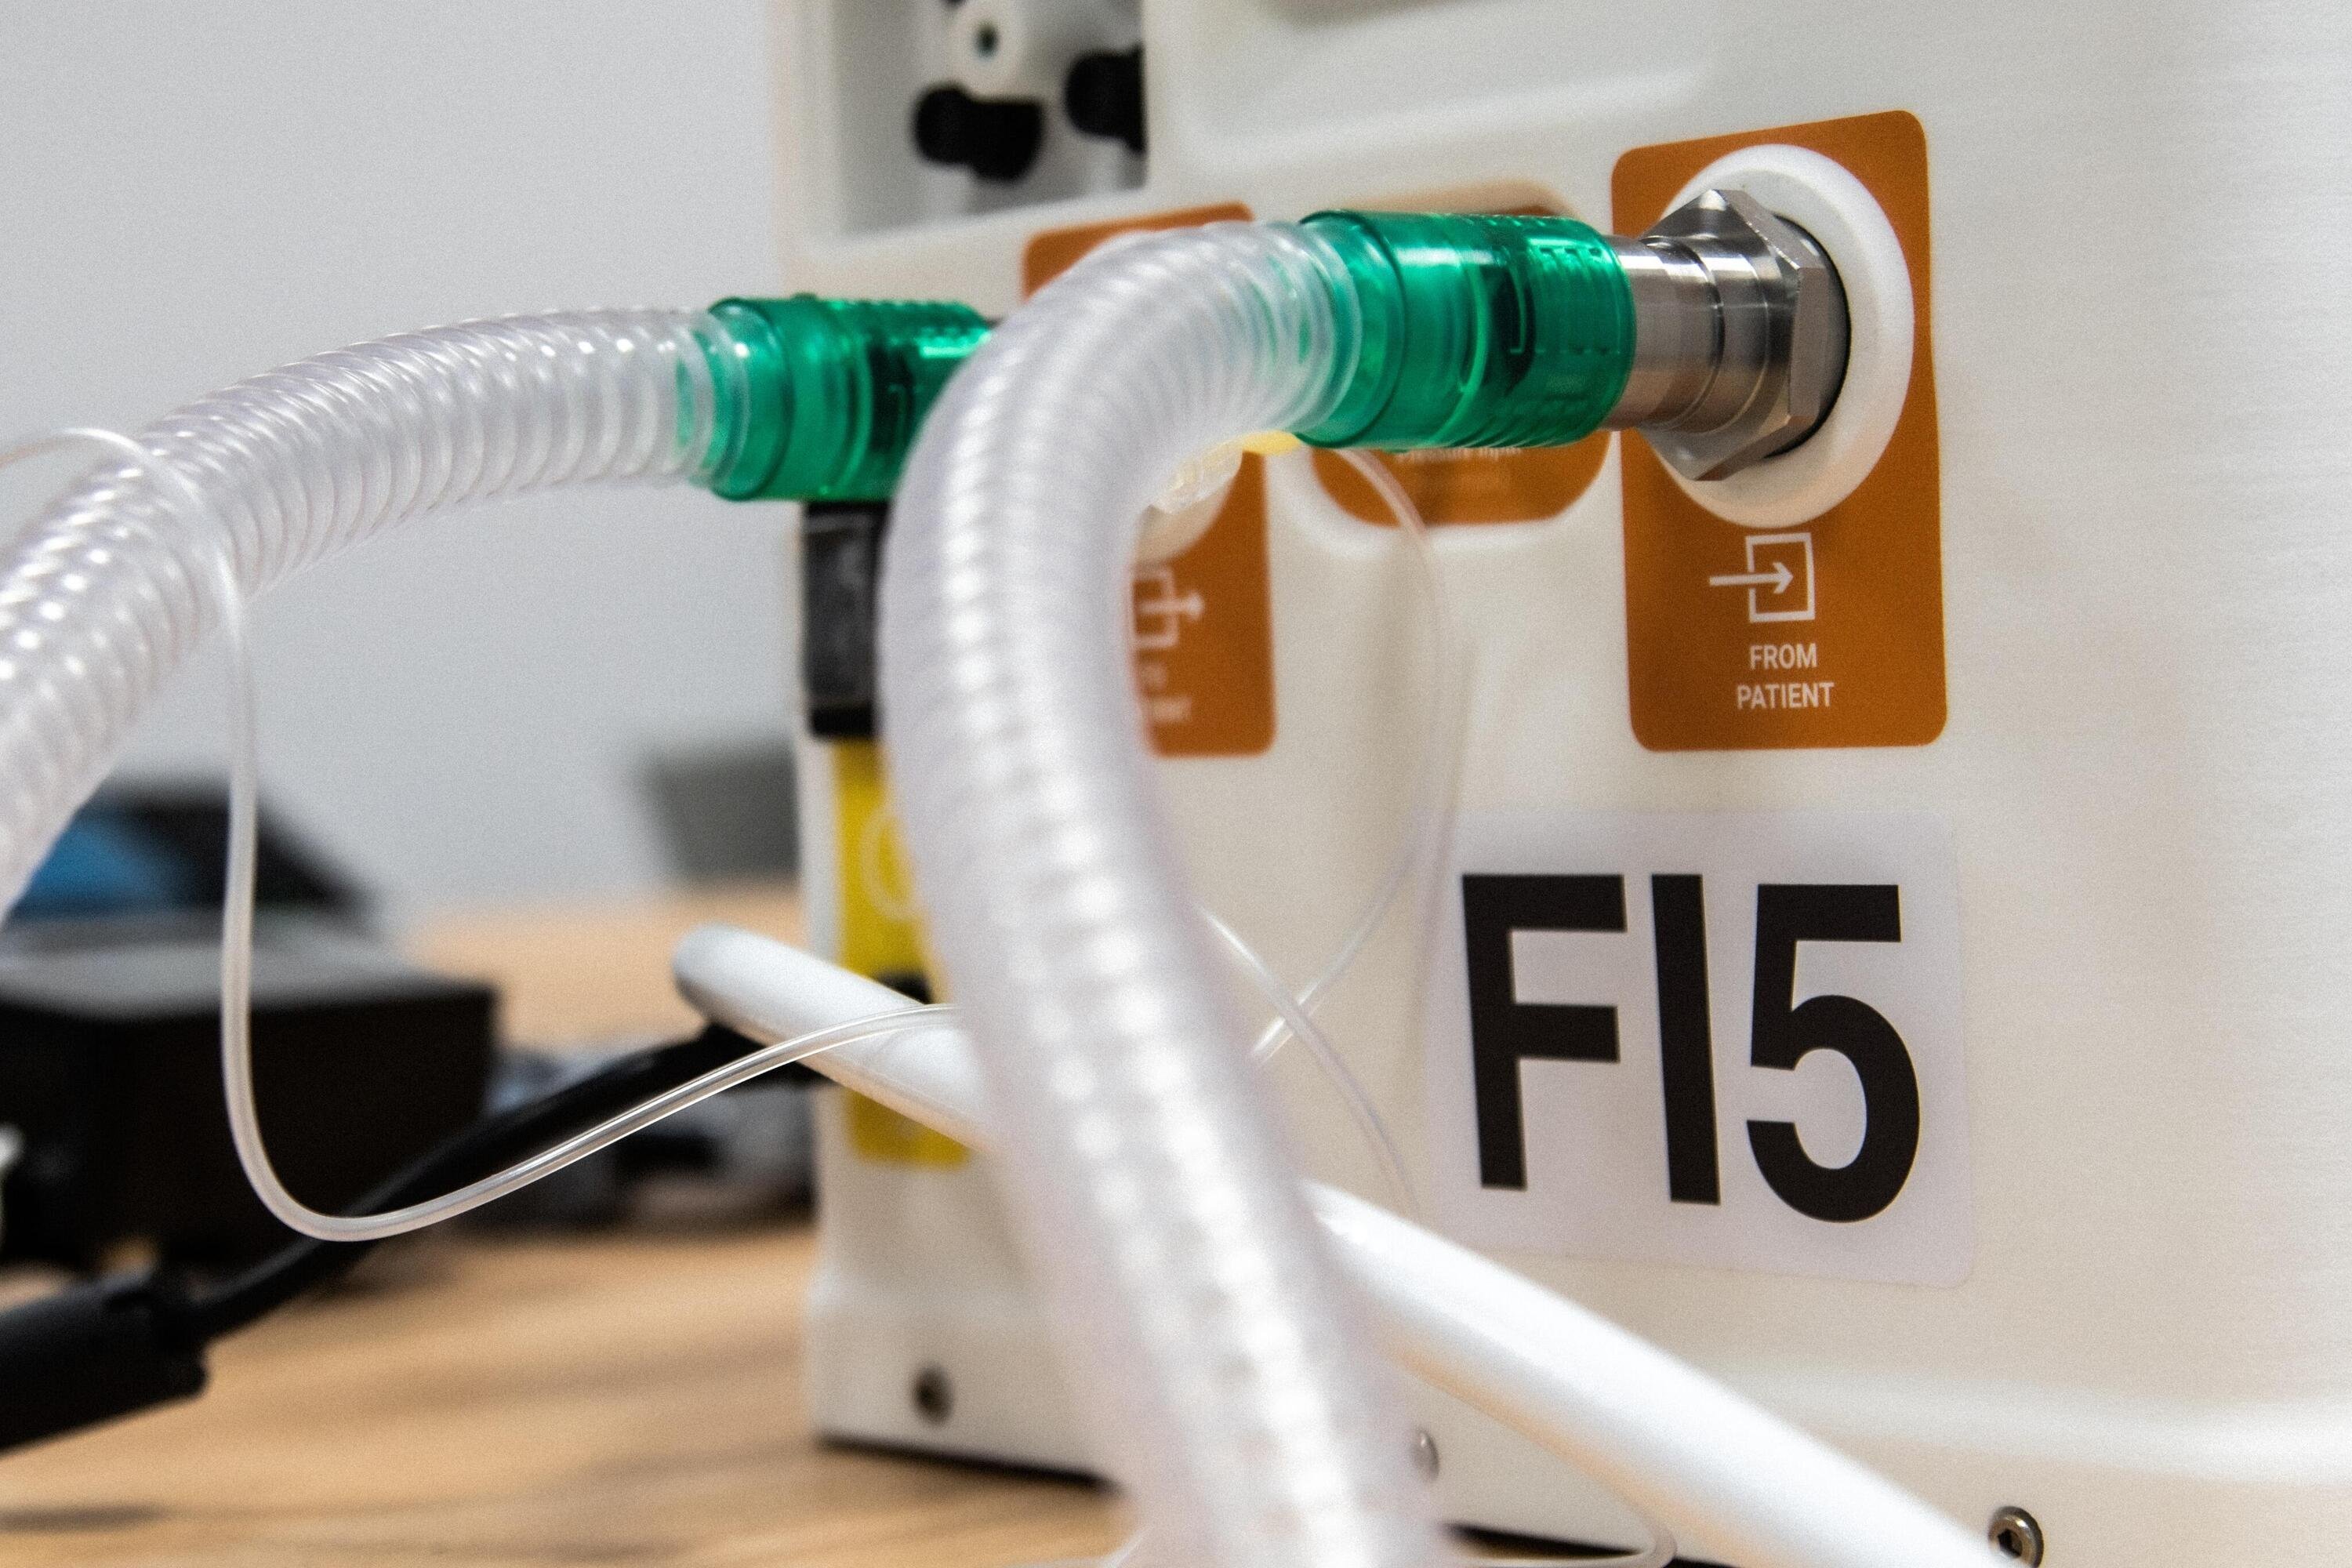 FI5: ecco il ventilatore polmonare &ldquo;Made in Ferrari&rdquo;